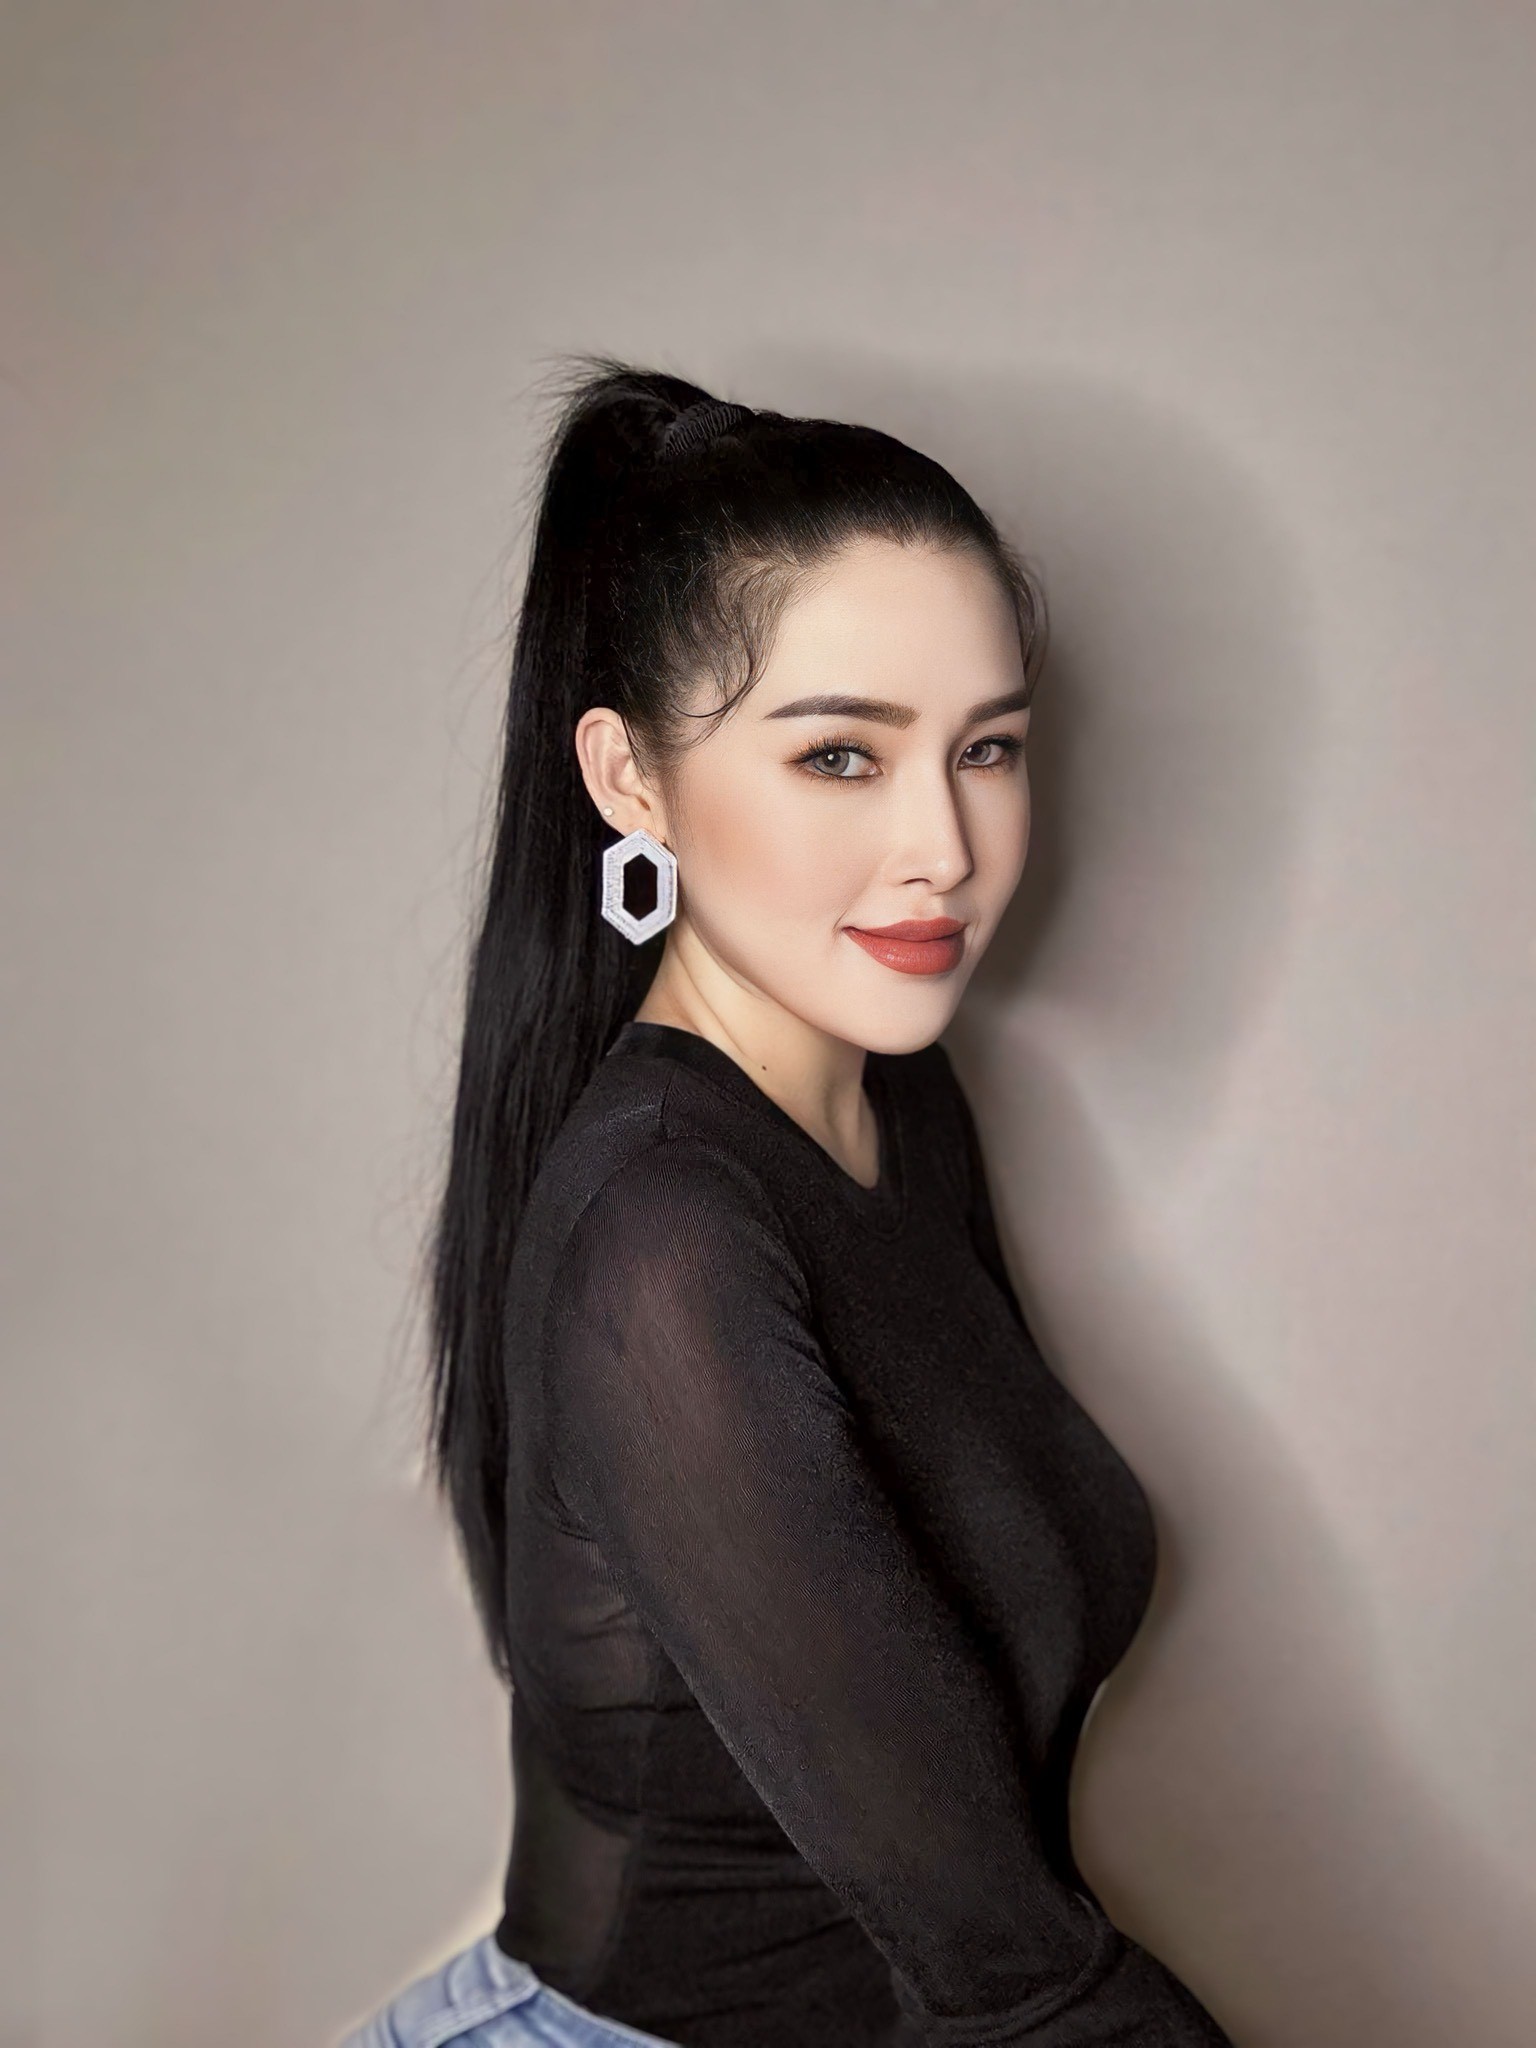 Hé lộ điều ít biết về cựu người mẫu Lyna Thiên Nga, mẹ đơn thân 2 con - ảnh 3